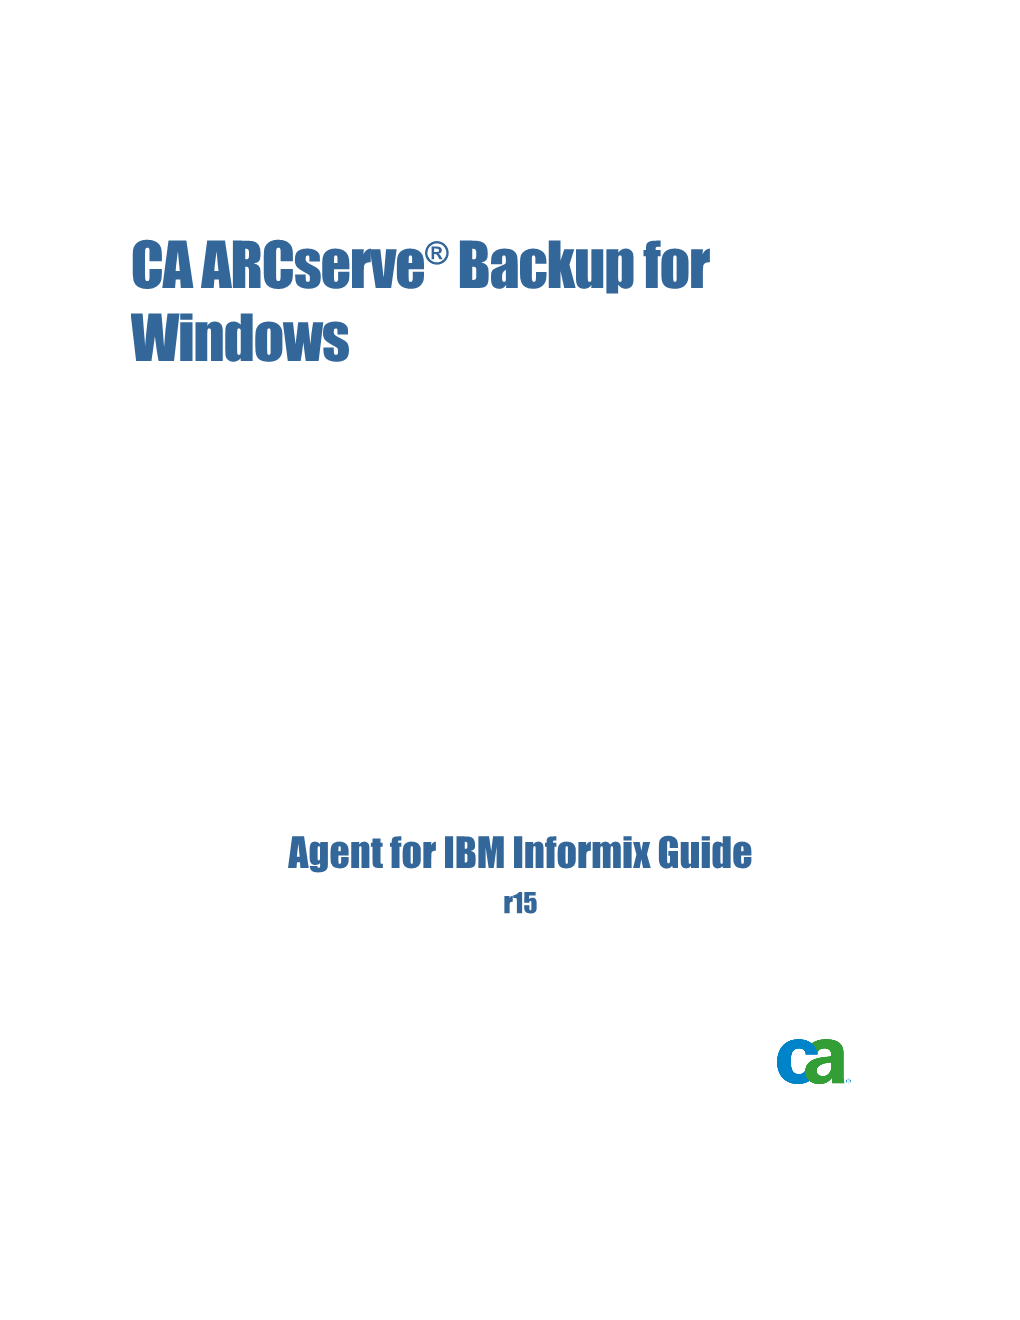 CA Arcserve Backup for Windows Agent for IBM Informix Guide